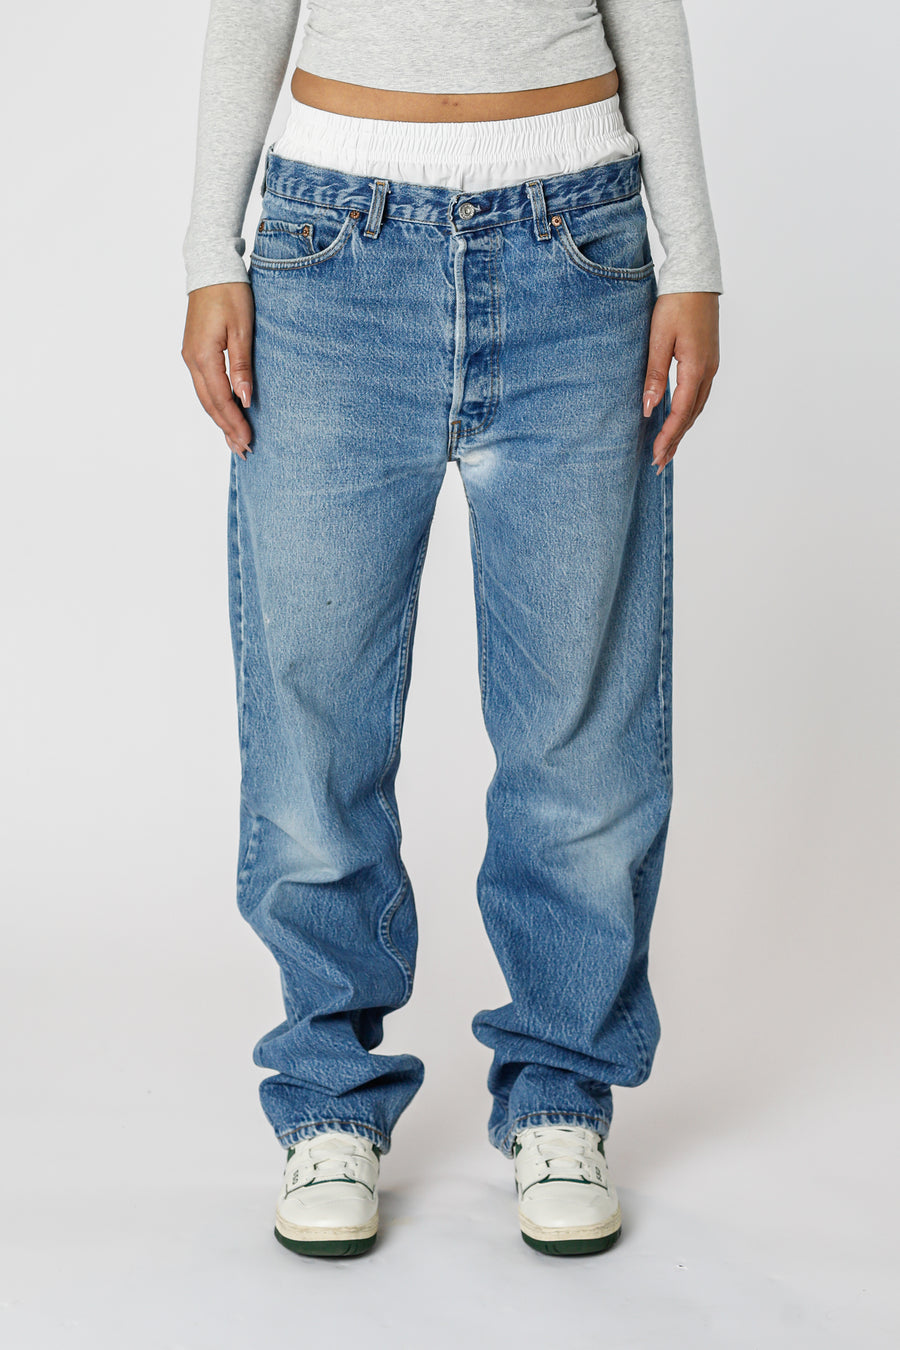 Vintage Levi's Denim Pants - W33 L36